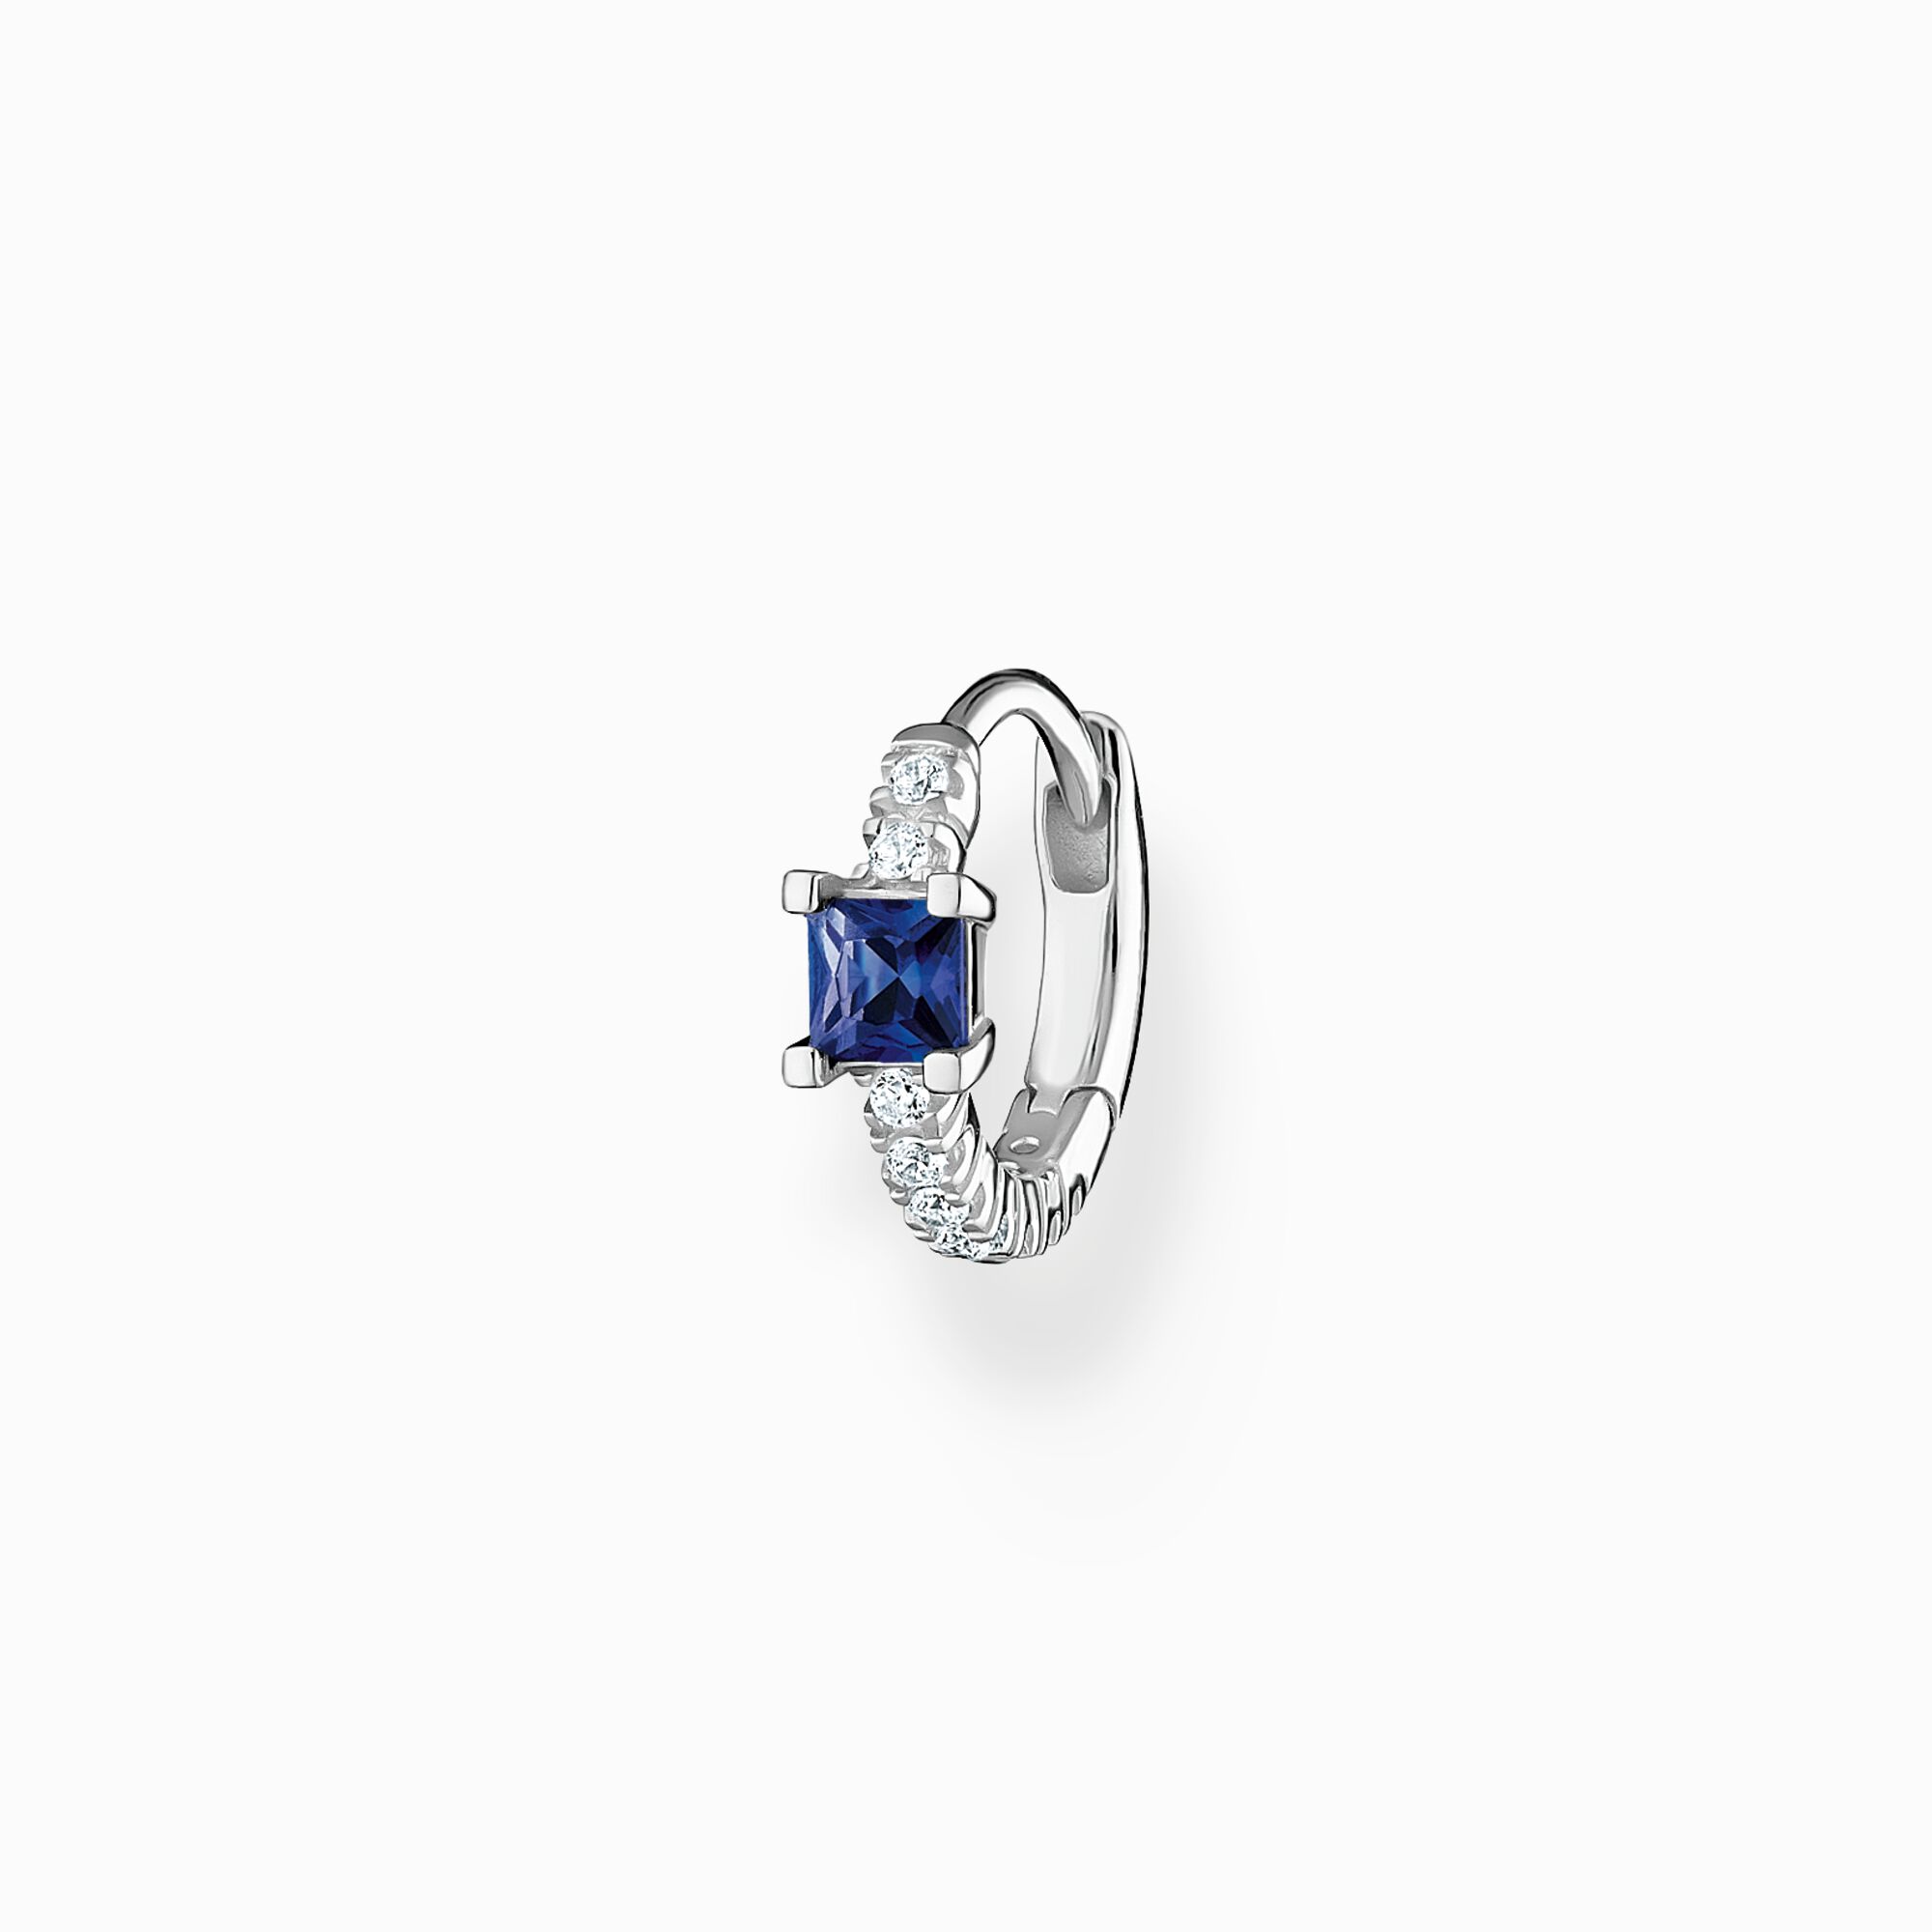 Aro con piedras azul y blancas plata de la colección Charming Collection en la tienda online de THOMAS SABO